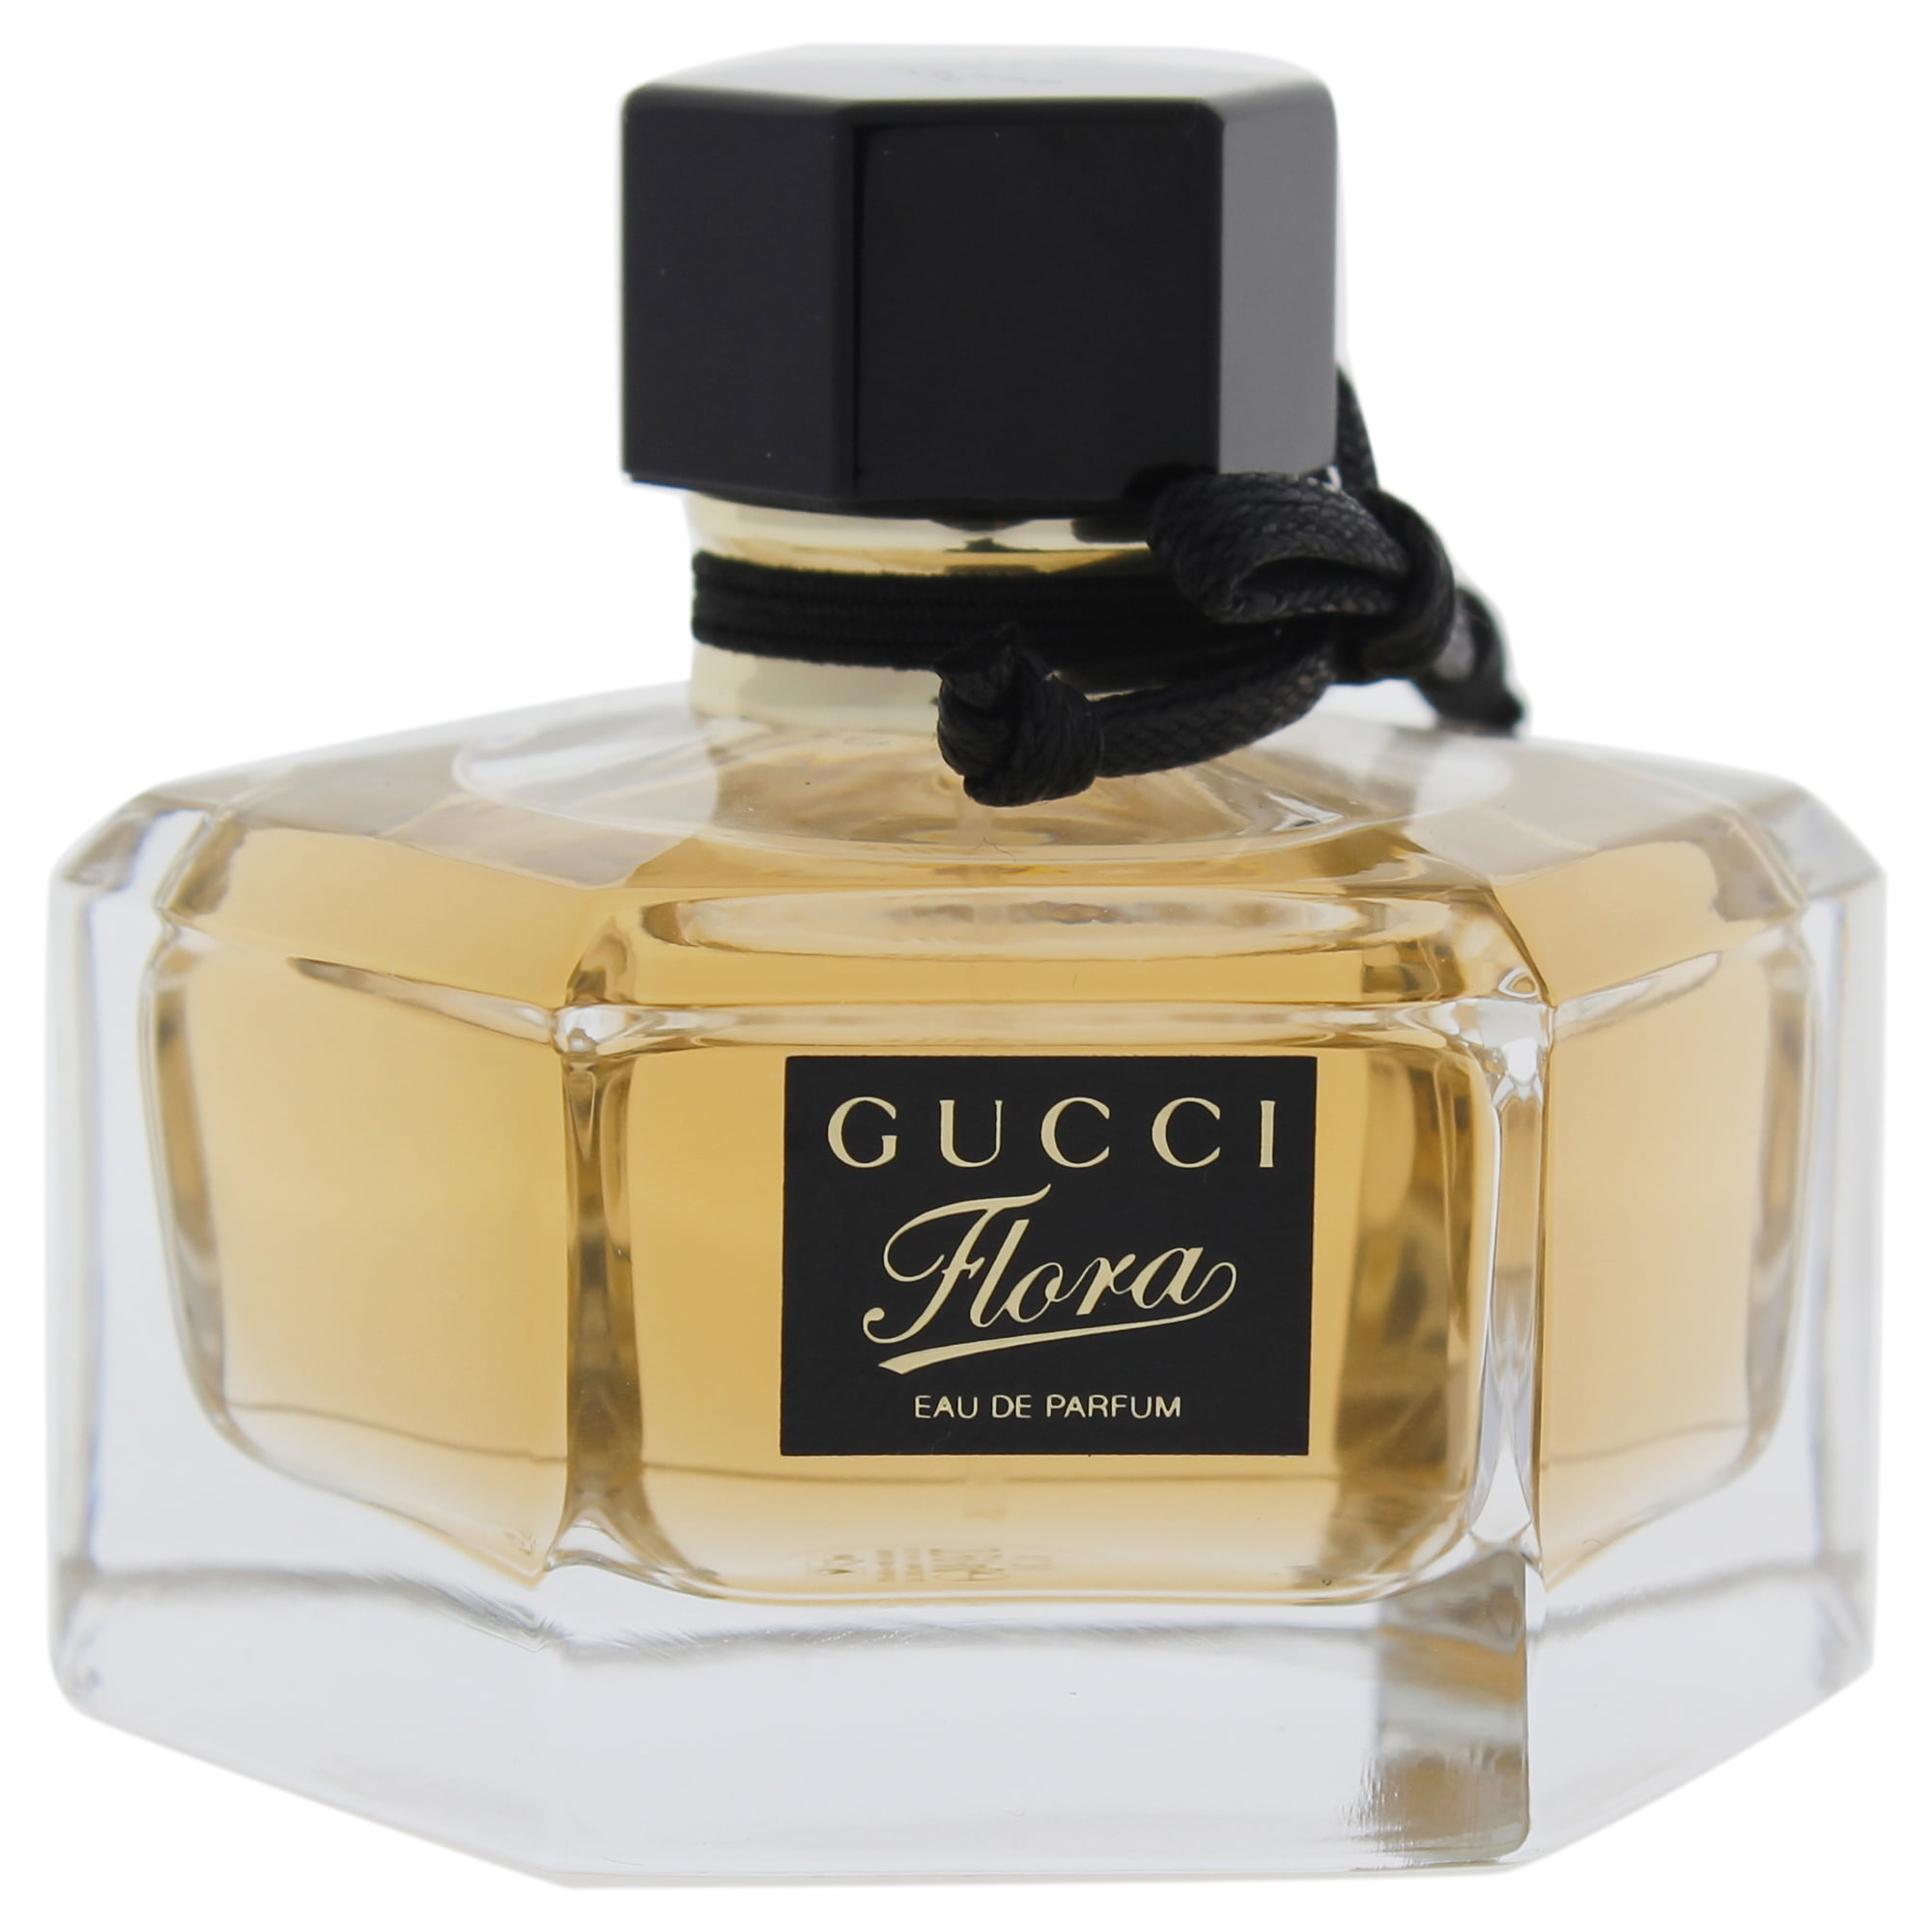 Monnik Laboratorium Zeggen Gucci Flora Eau de Parfum, Perfume for Women, 1.7 Oz - Walmart.com